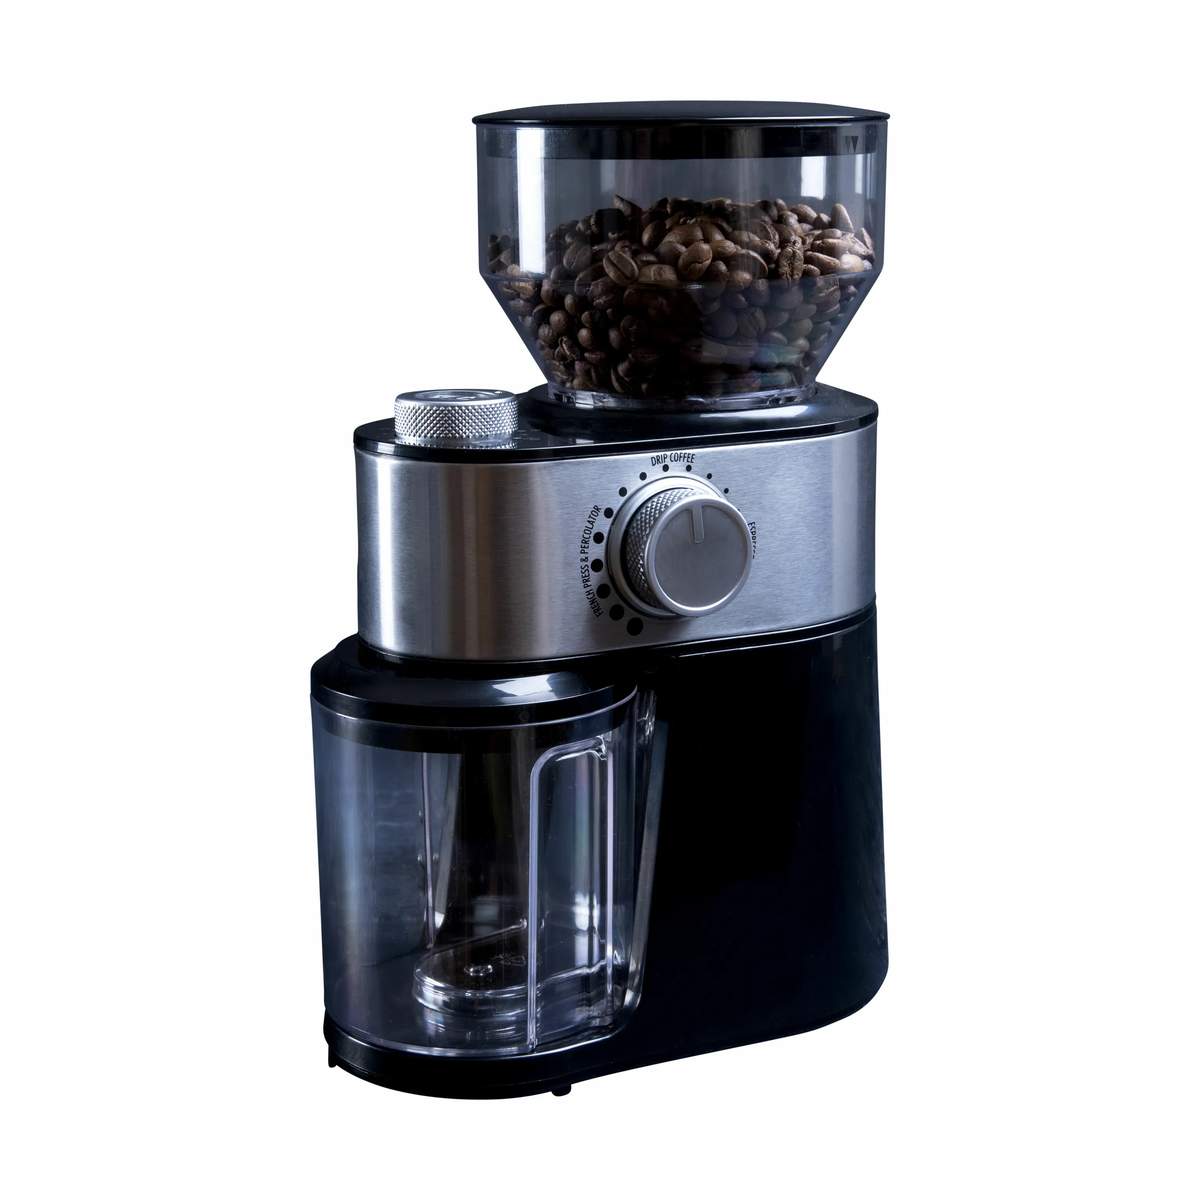 Gastronoma - Kaffekværn - 200 gram - 200 Watt Sort/stål | Imerco